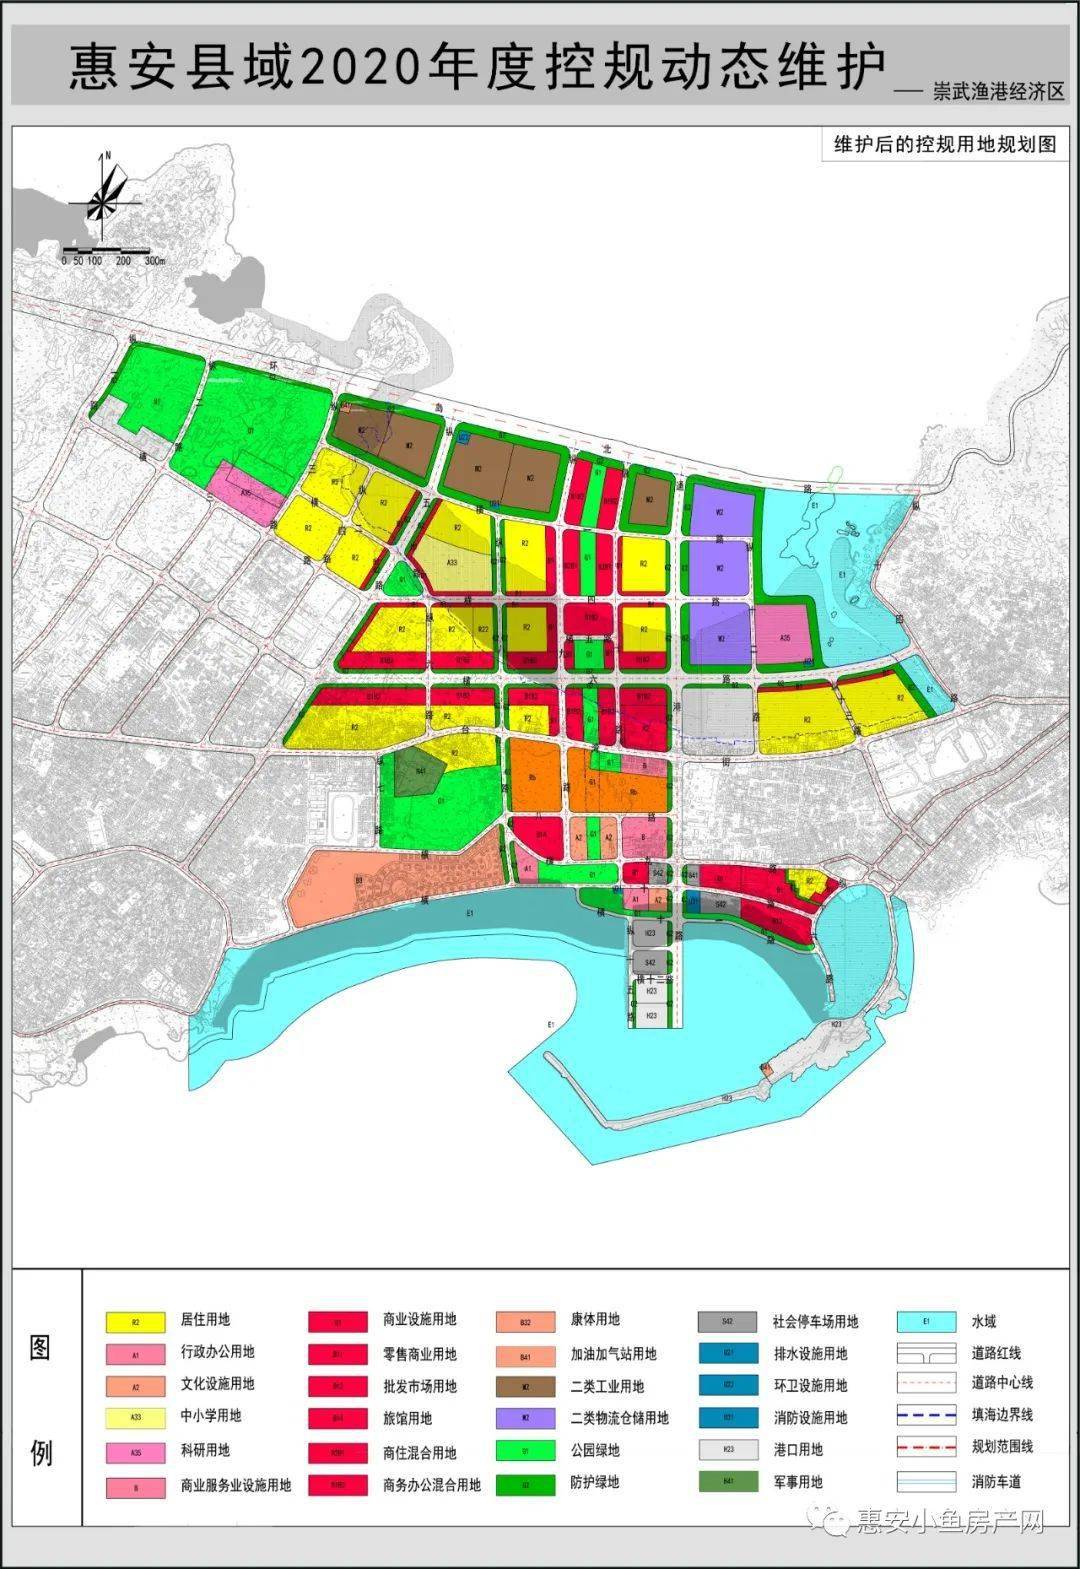 涉及9个镇| 关于惠安2020年度控规动态维护及局部地块